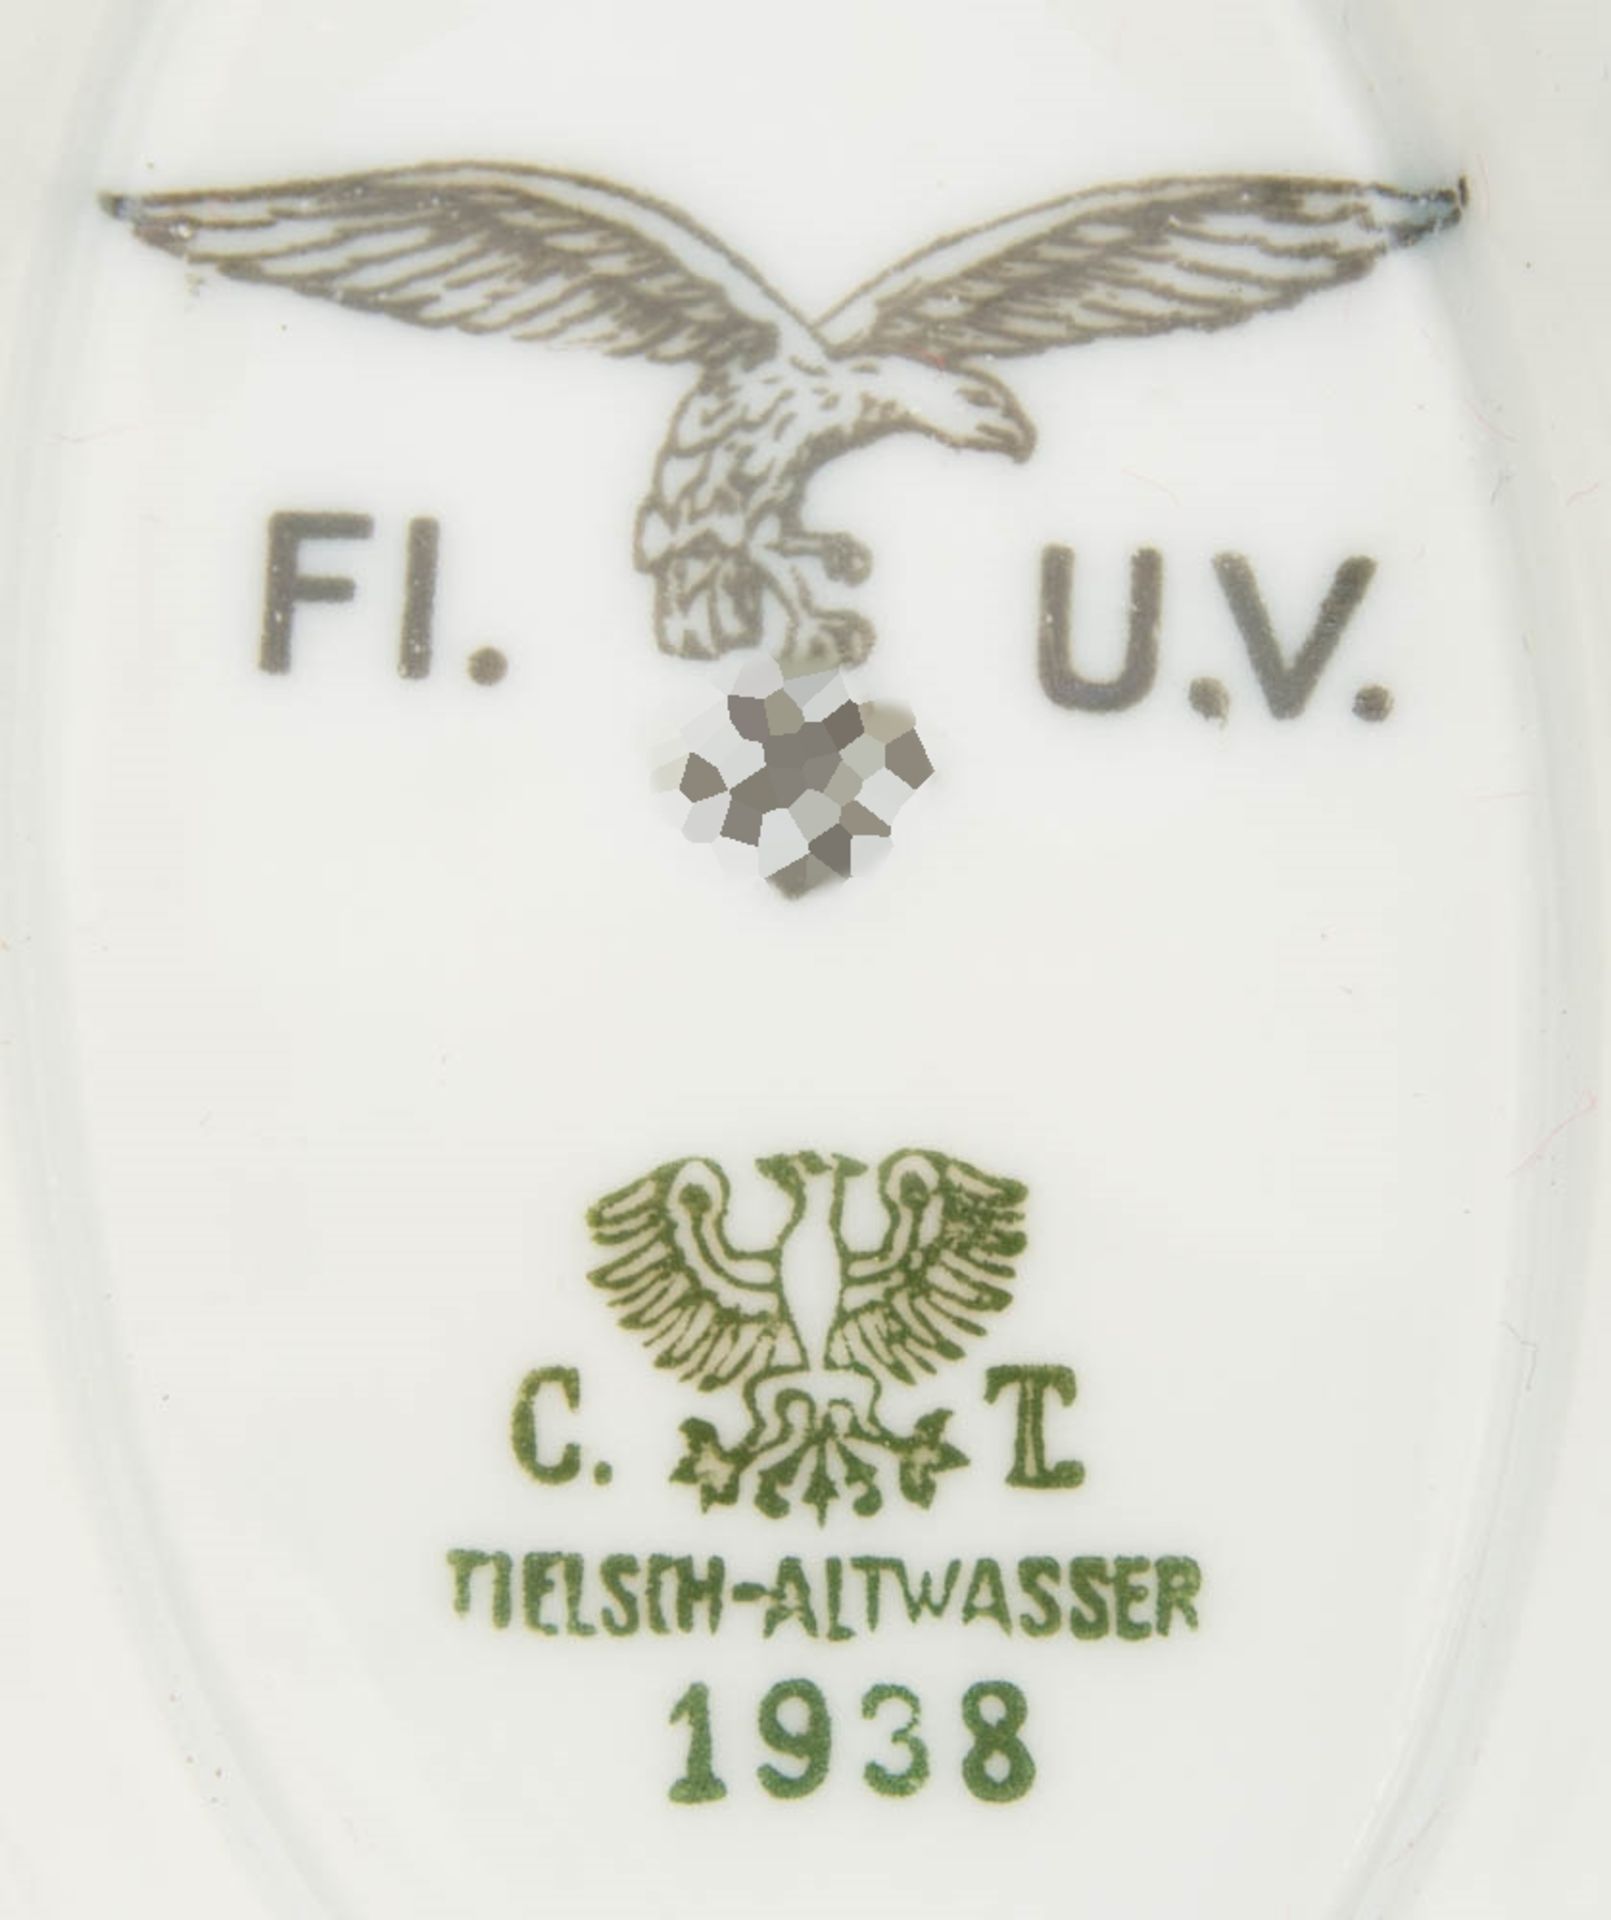 Kantinengeschirr, Sauciere der Luftwaffe, FI.U.V., Tielsch- Altwasser 1938.Keine Besto - Bild 2 aus 3